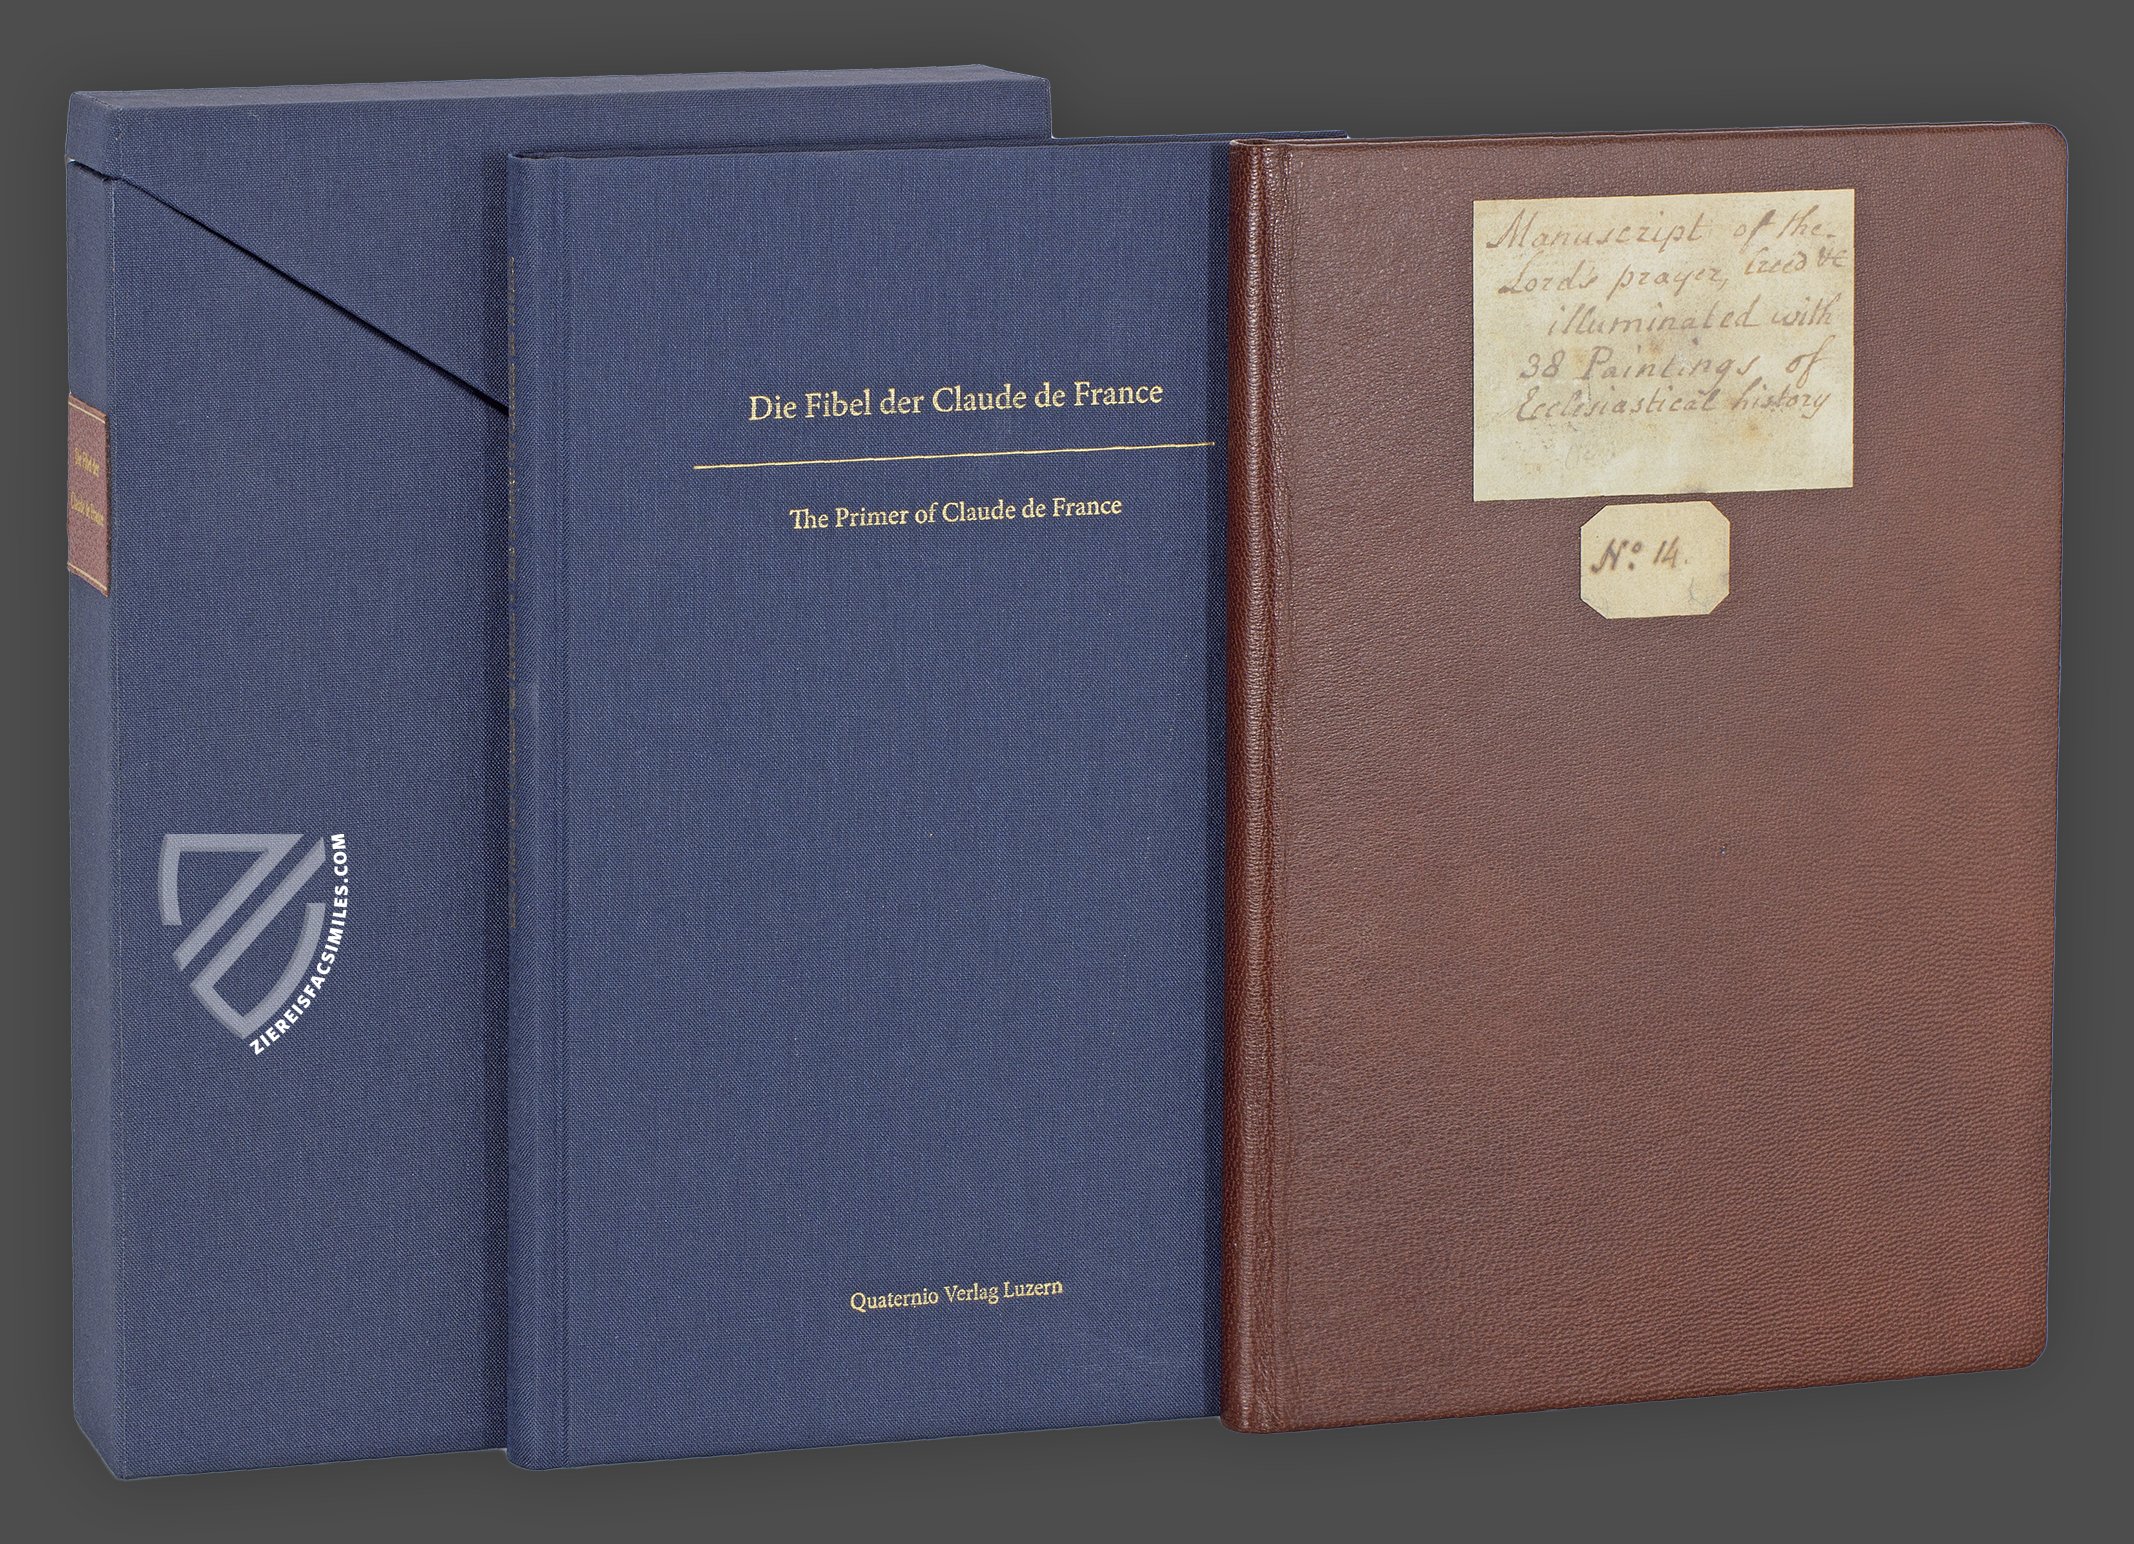 1 livre de Collection de 250 pièces livre de pièces - Temu Switzerland